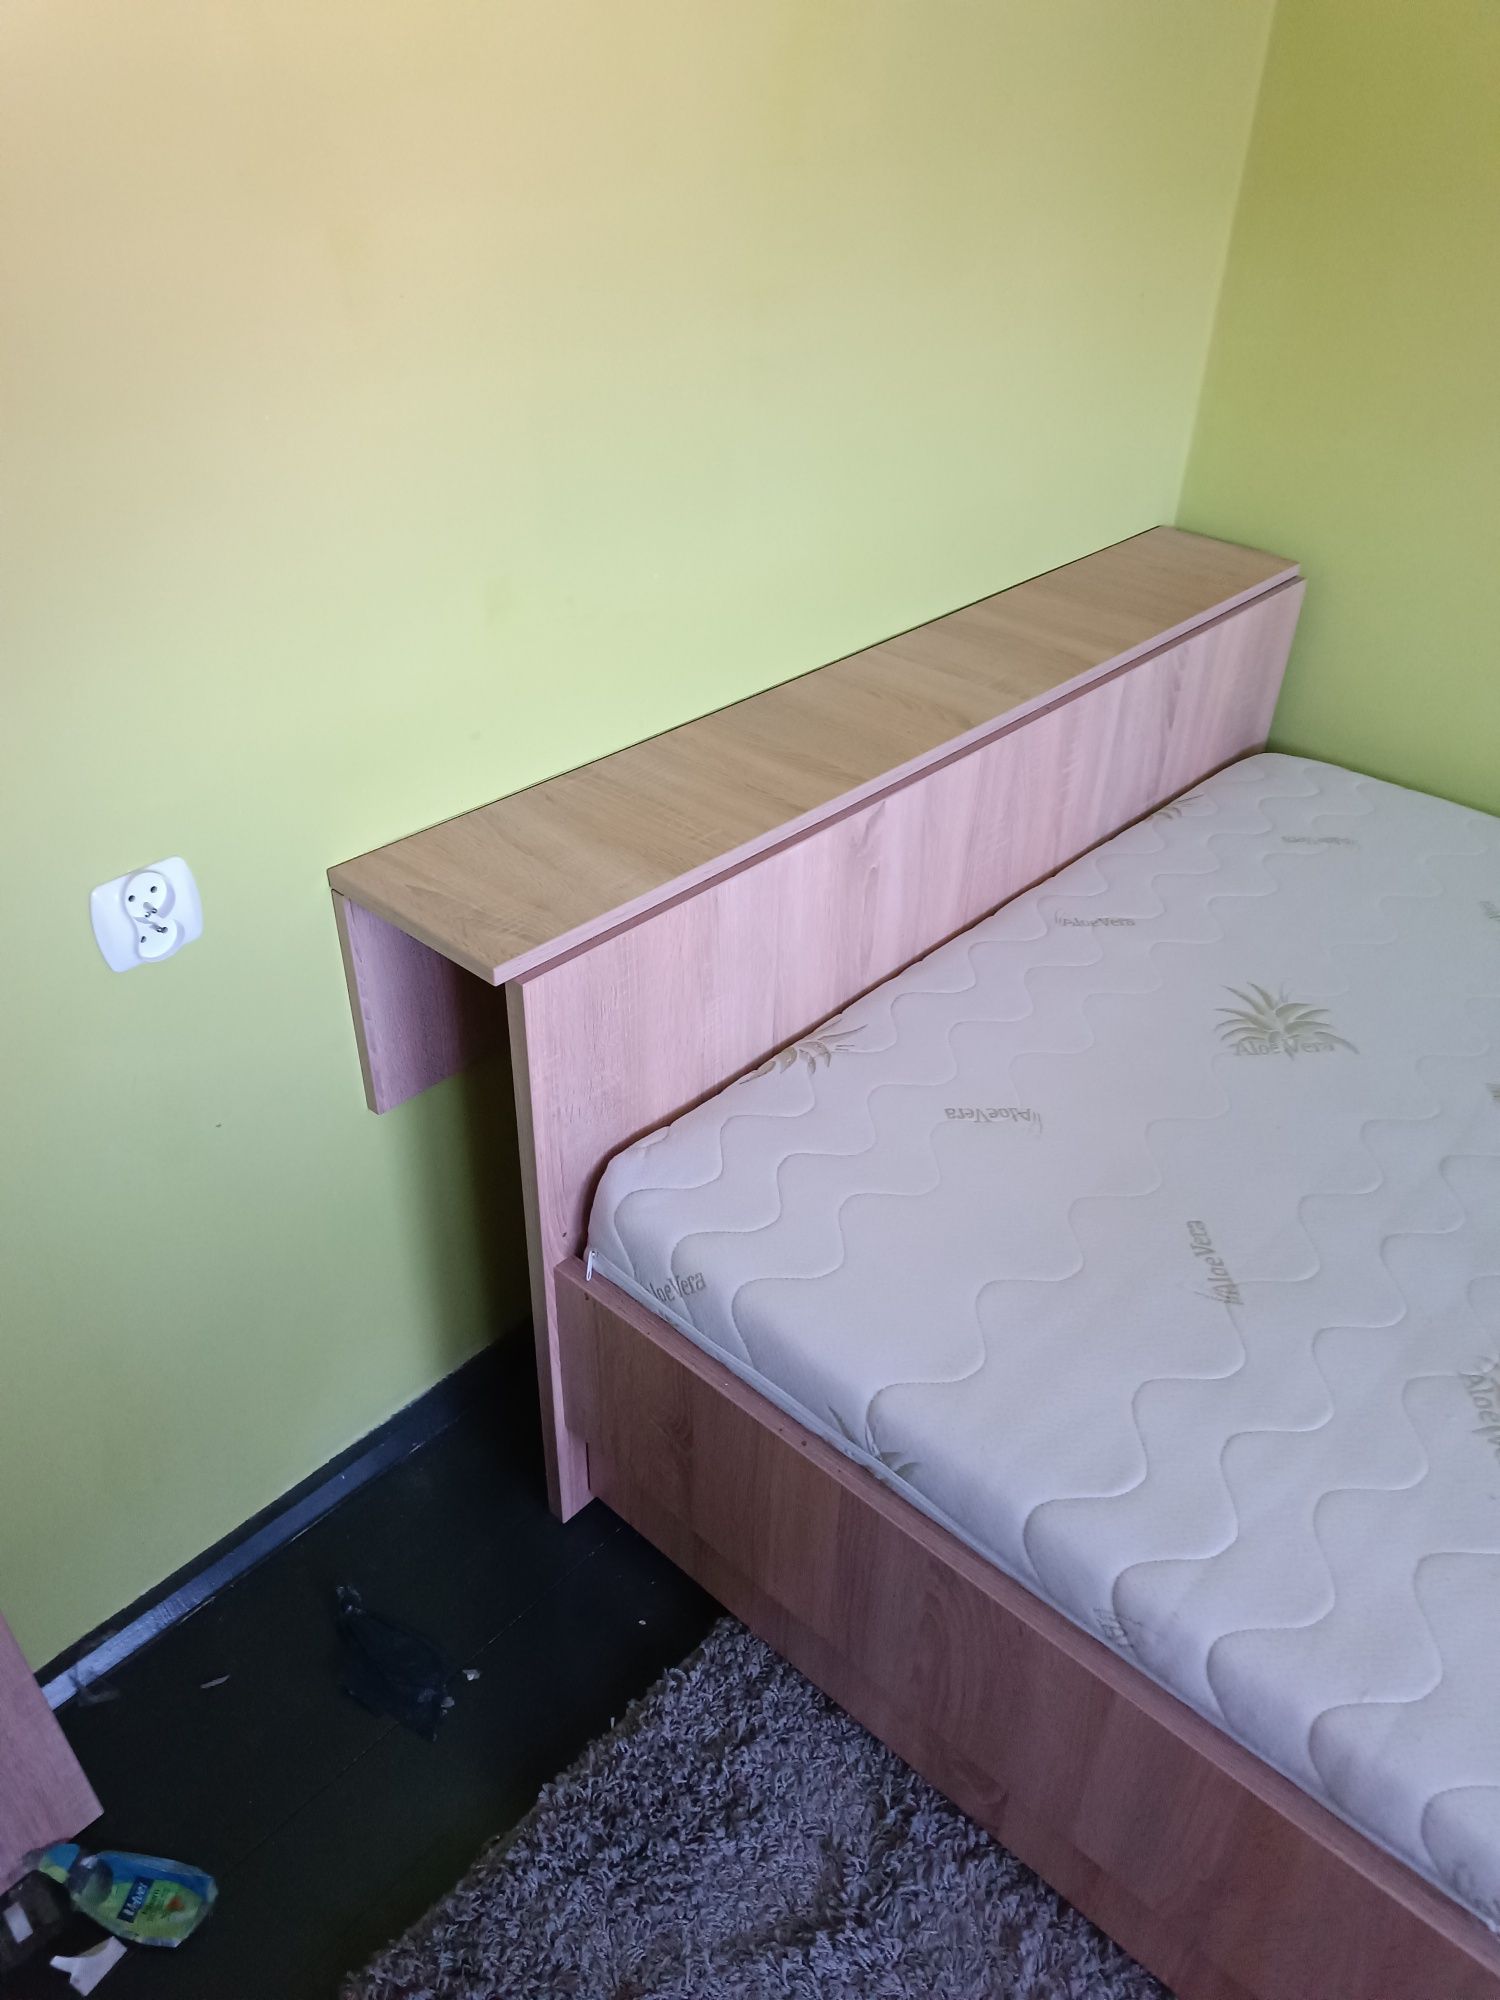 Sprzedam łóżko z materacem (robione przez stolarza)+ półka wisząca